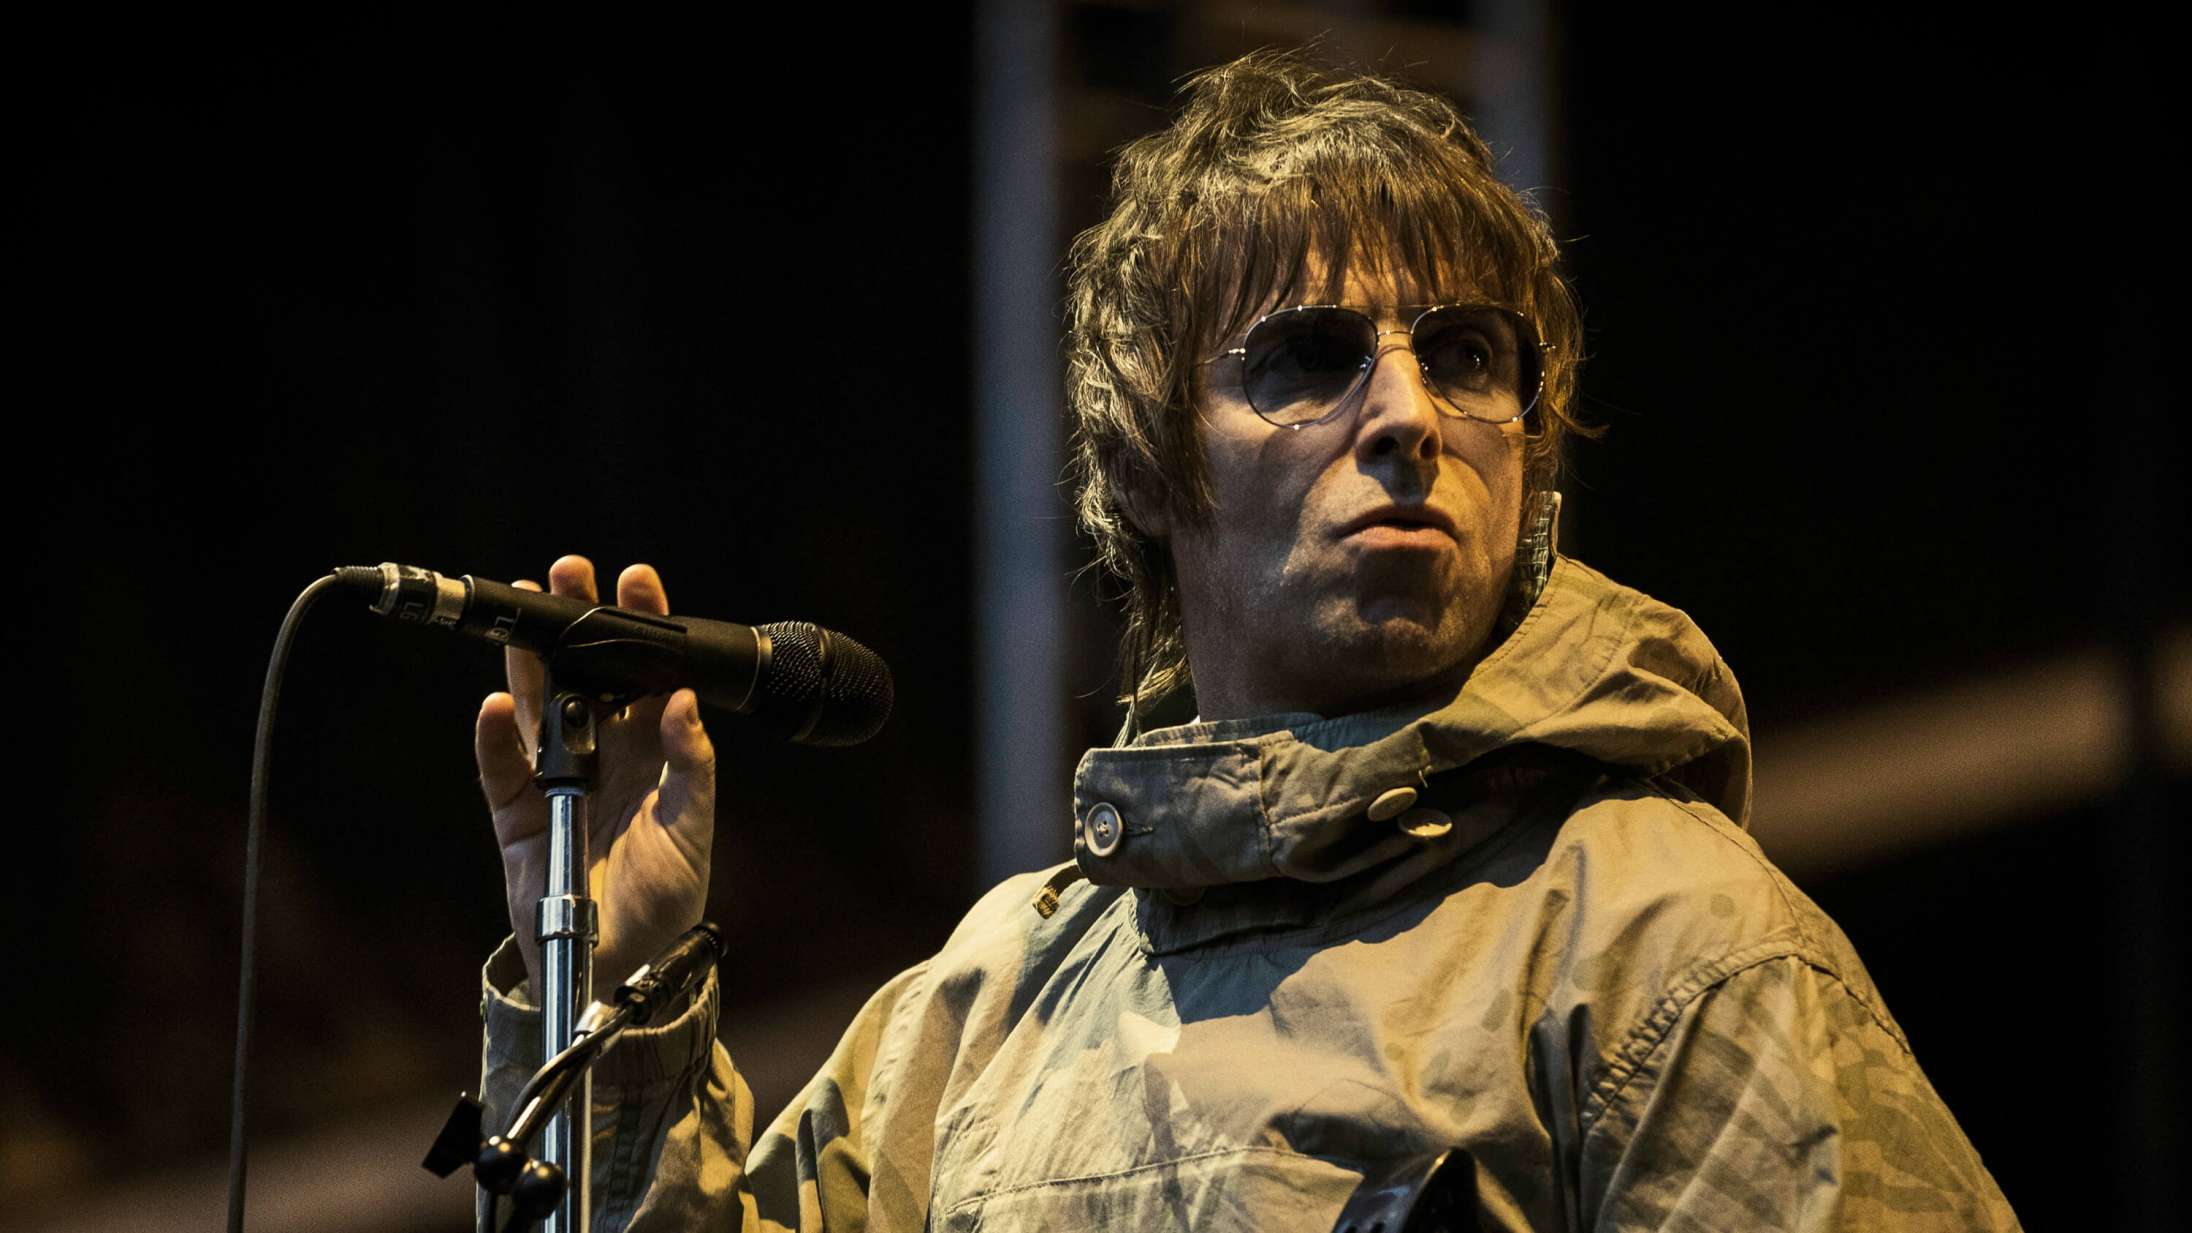 Liam Gallagher byder ind i ‘nepo baby’-debatten: »Klap i, I misundelige, grimme fuckere«